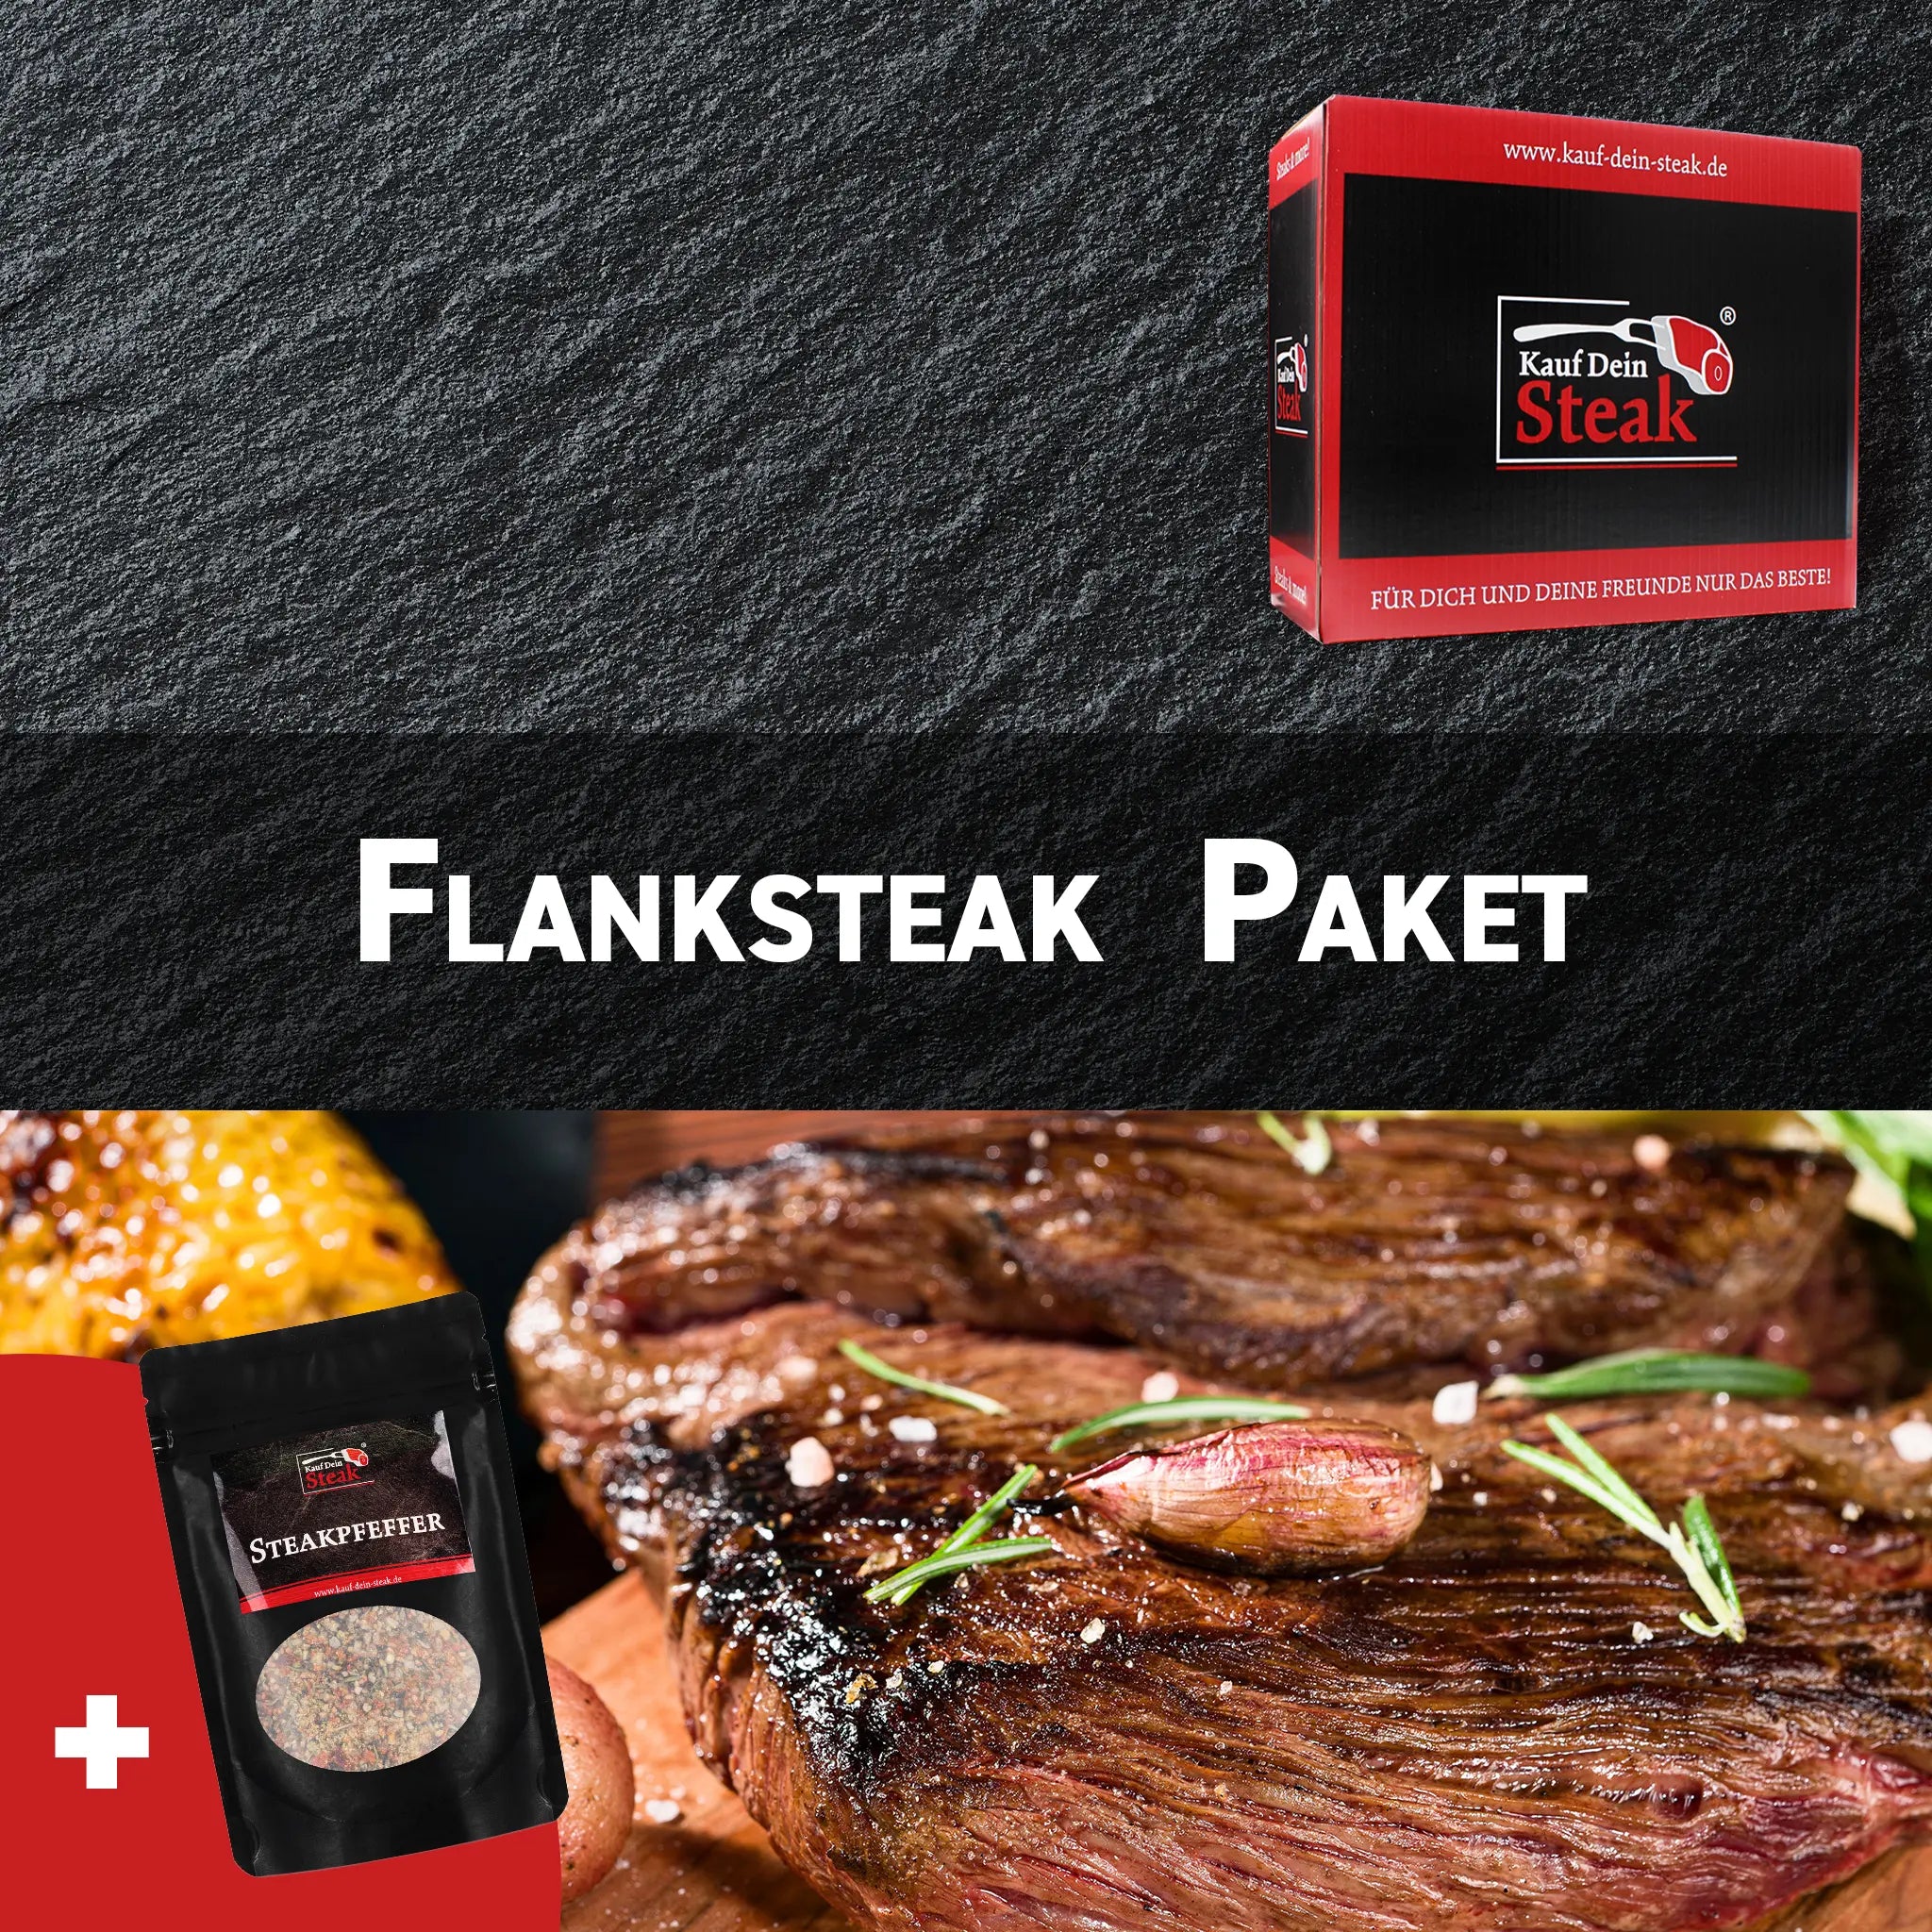 6 x Flanksteak + Steakpfeffer